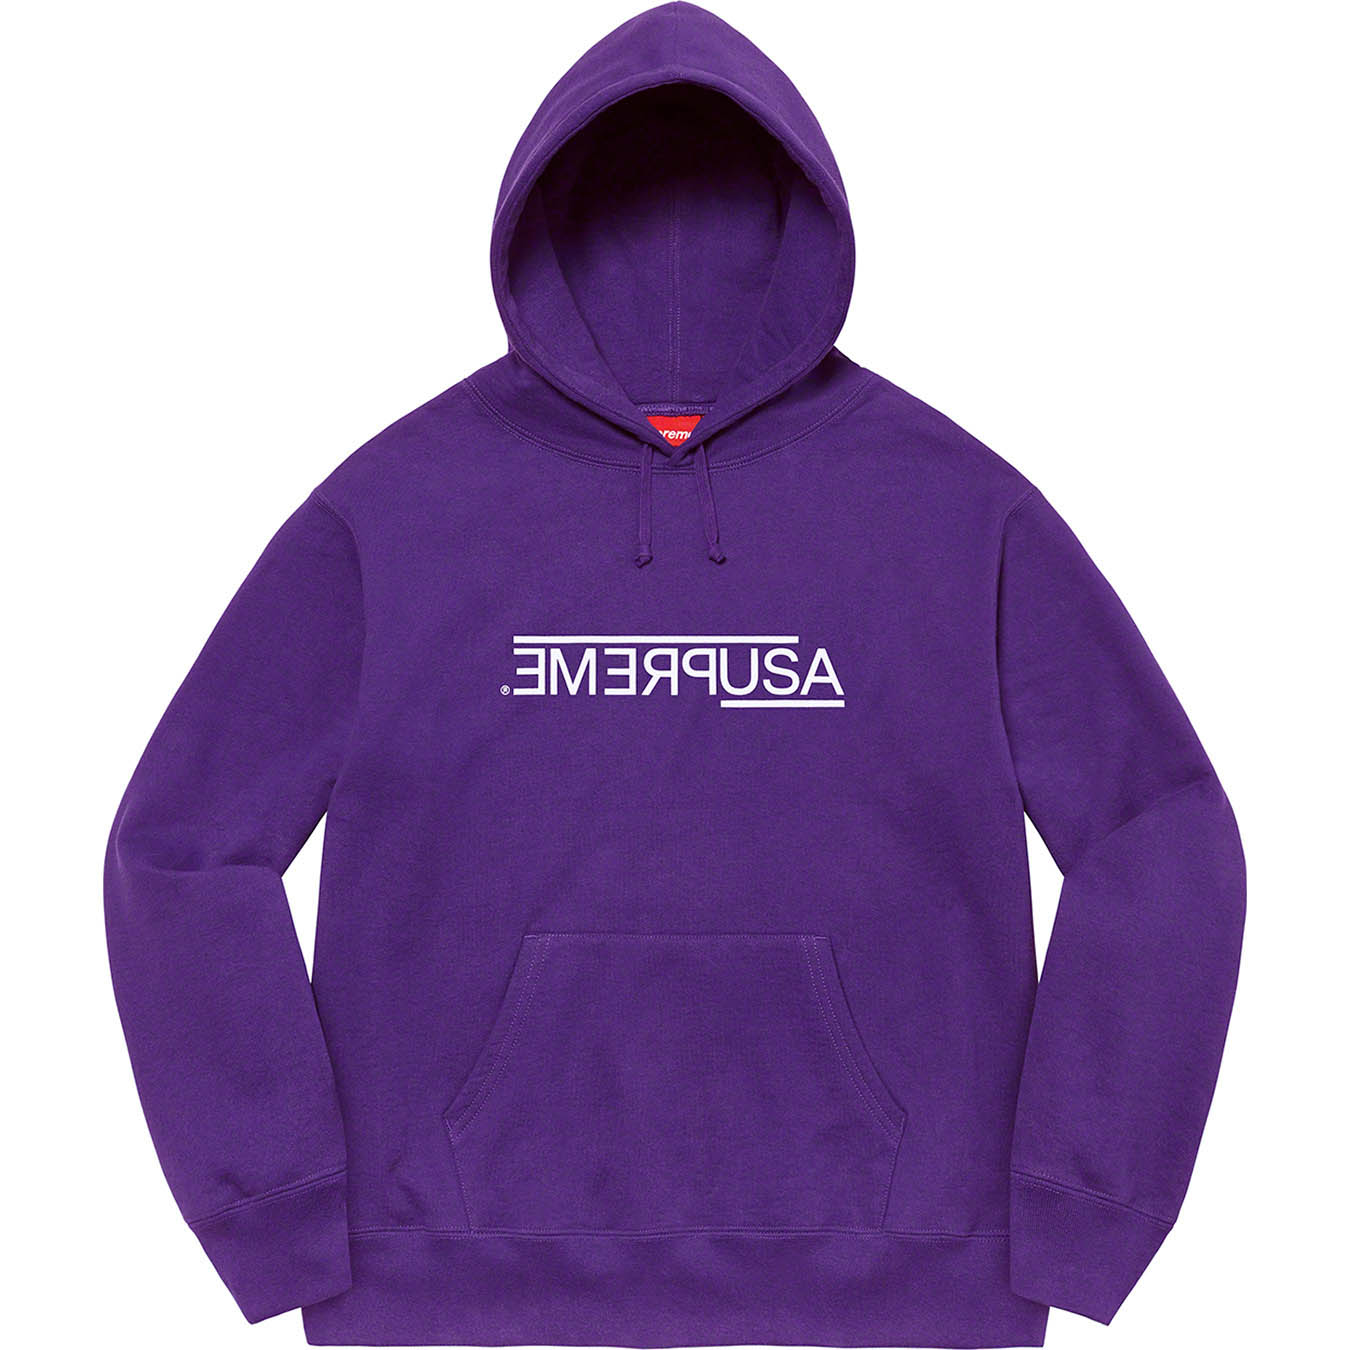 Supreme USA Hooded Sweatshirt